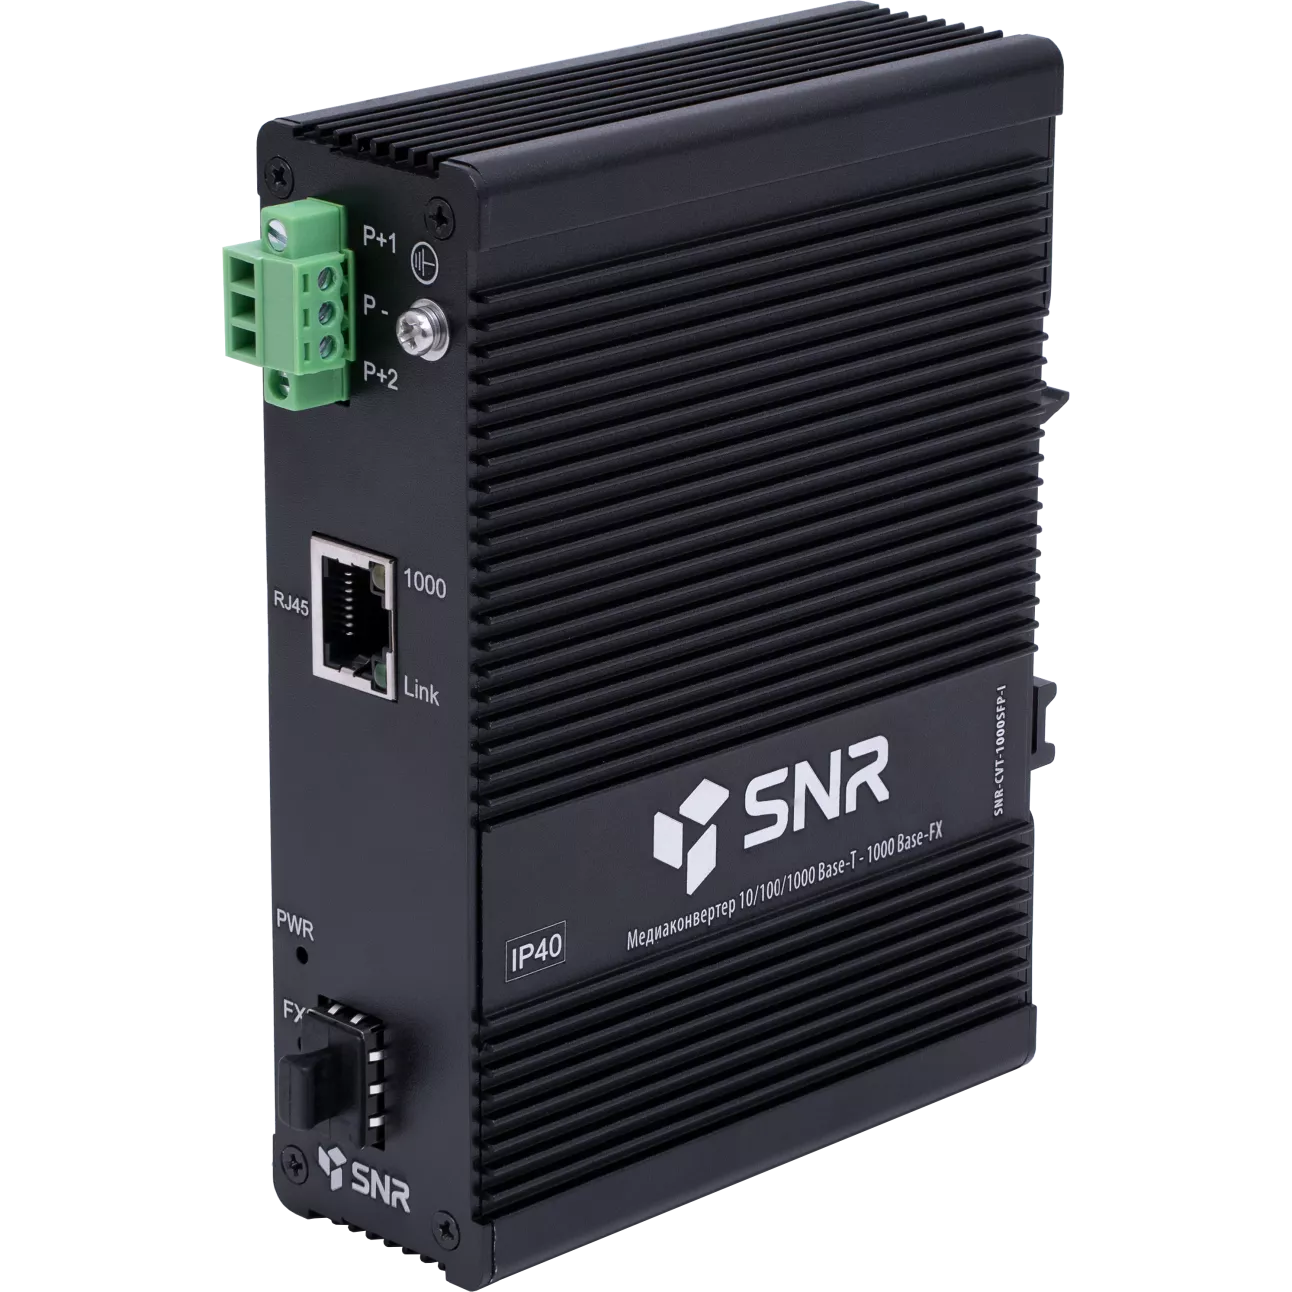 SNR-CVT-1000SFP-I - Медиаконвертер для преобразования 10/100/1000Base-T в 1000Base-FX с SFP-портом с расширенным температурным режимом